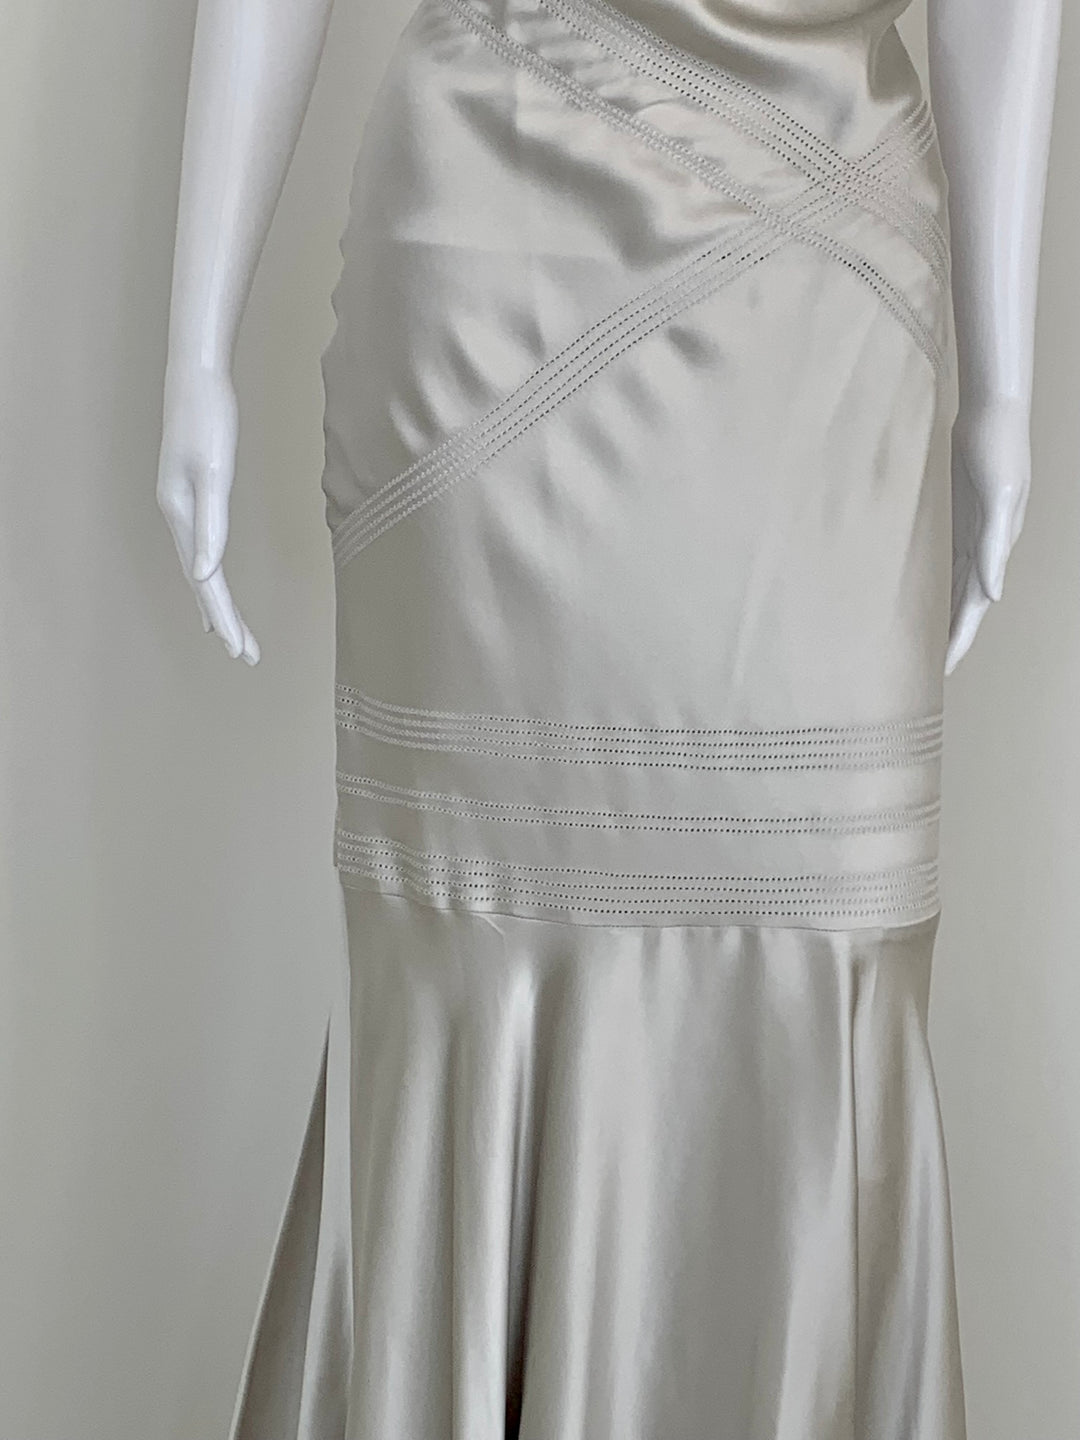 Amanda Wakeley, Dress, 2007, Size UK 8